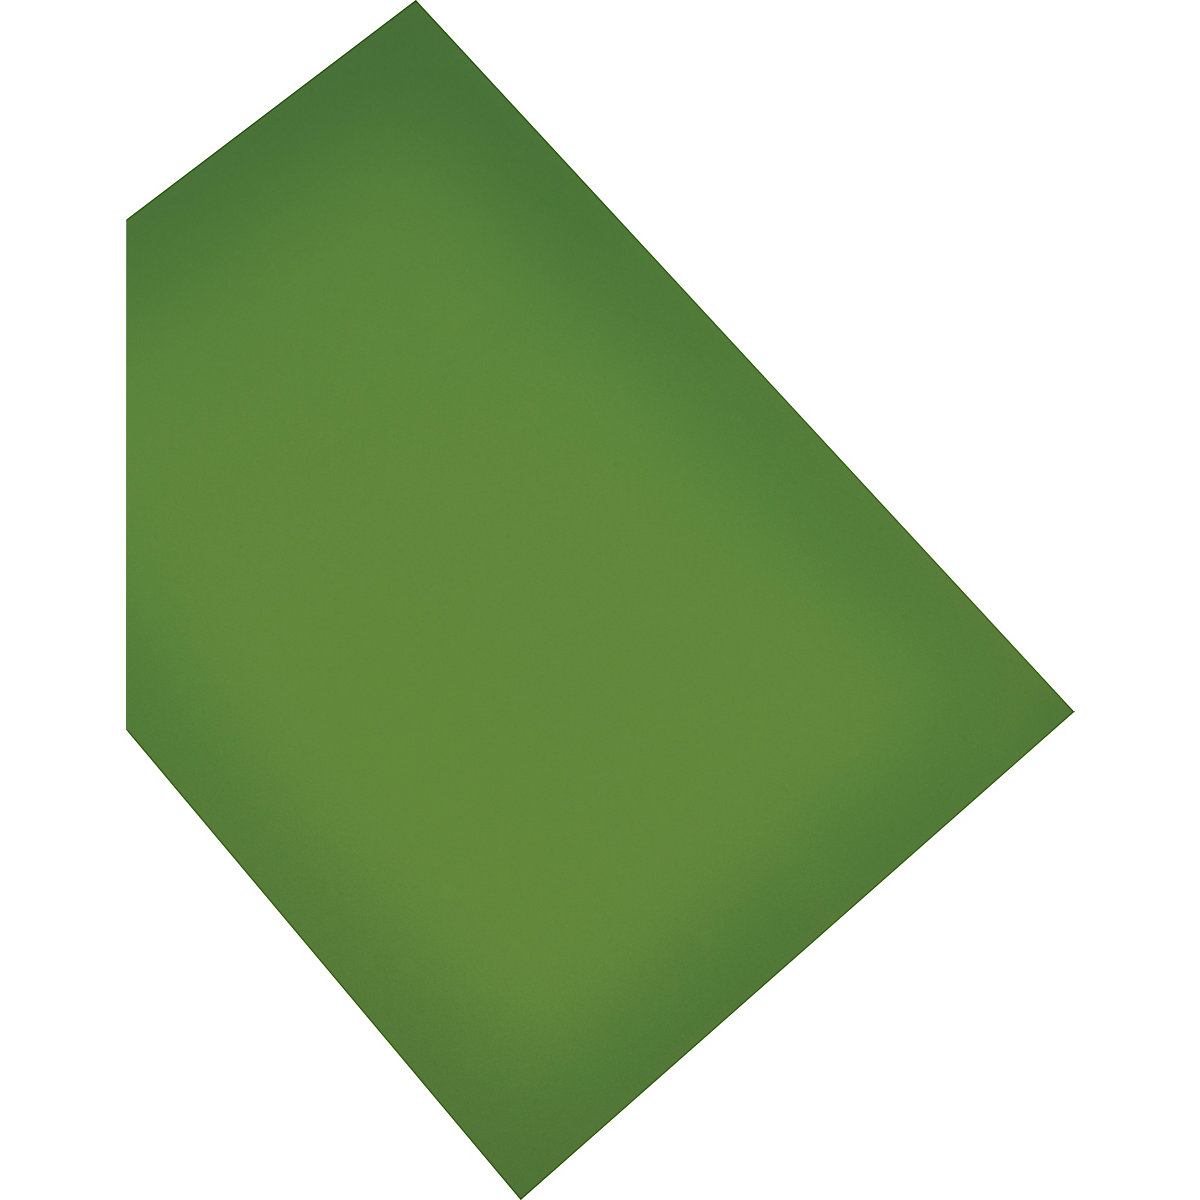 Magnetisch papier – magnetoplan, A4, VE = 2 stuks, groen-6